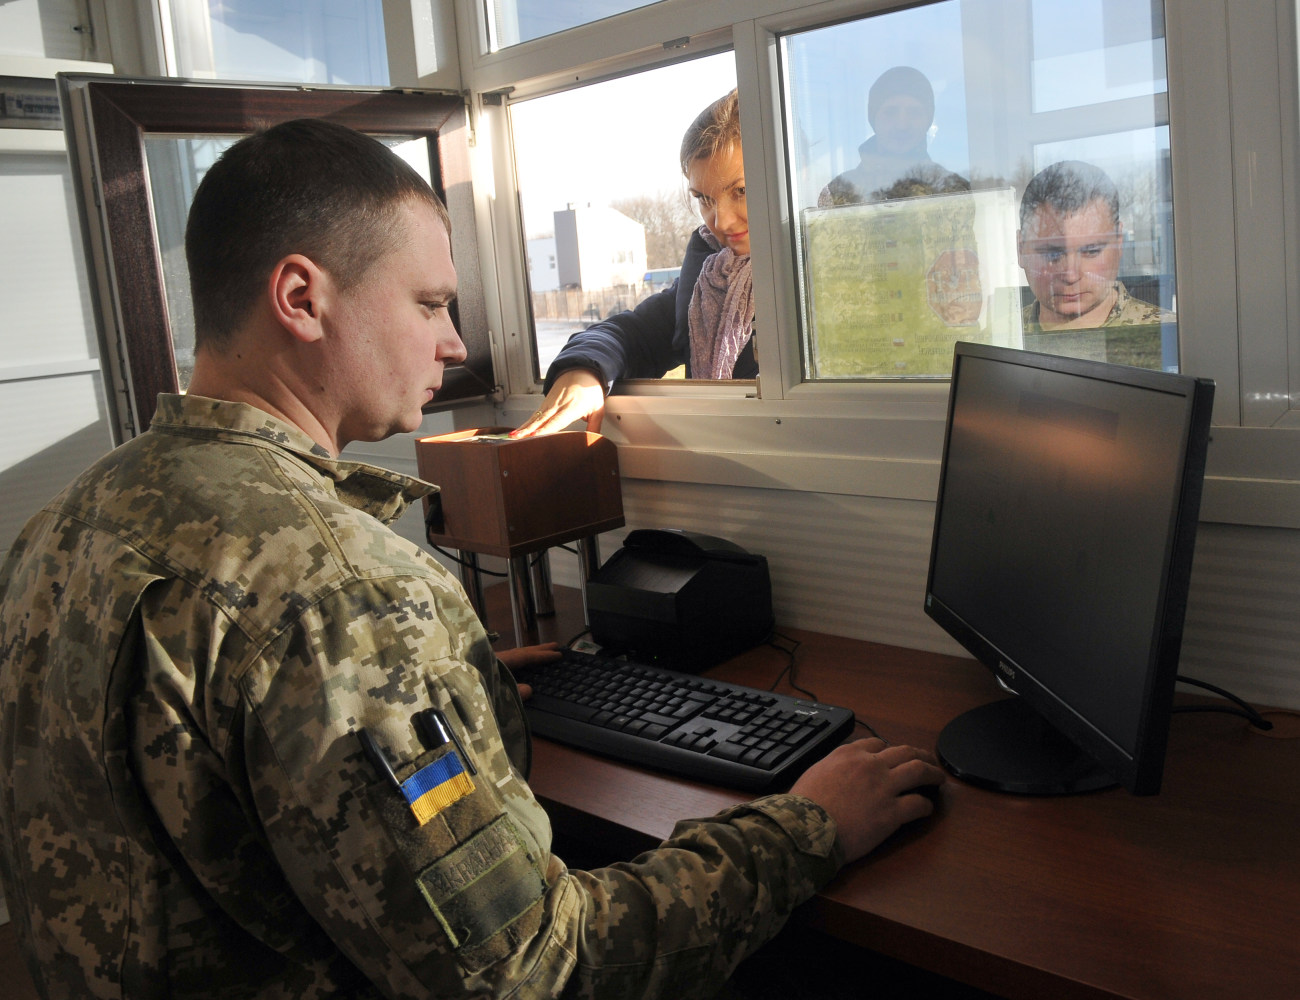 Украина запустила биометрический контроль на границе с Россией